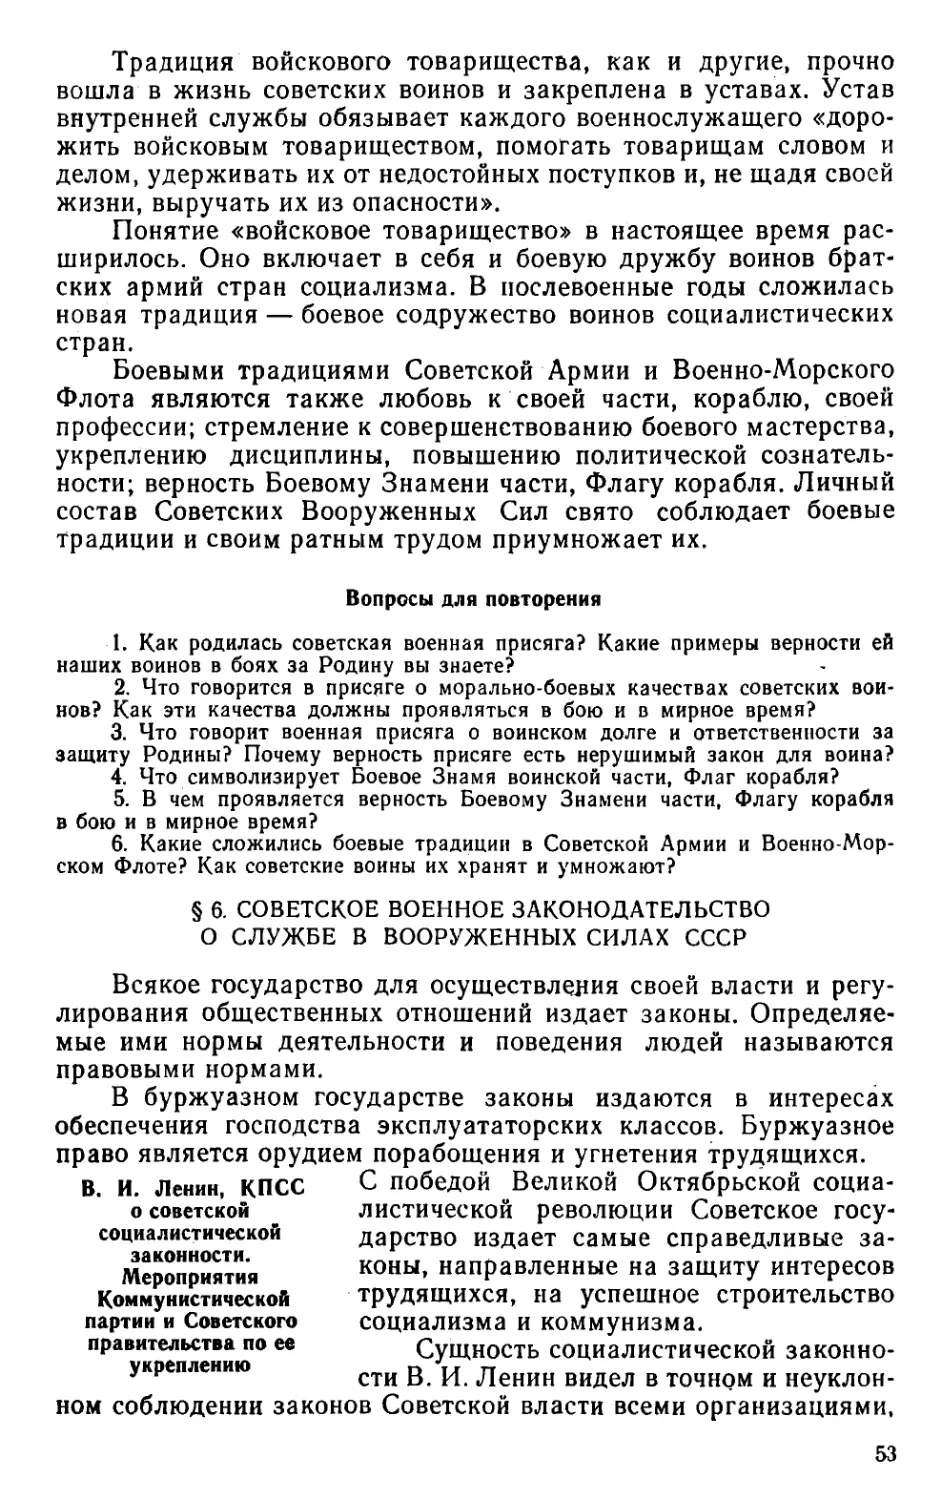 § 6. Советское военное законодательство о службе в Вооруженных Силах СССР